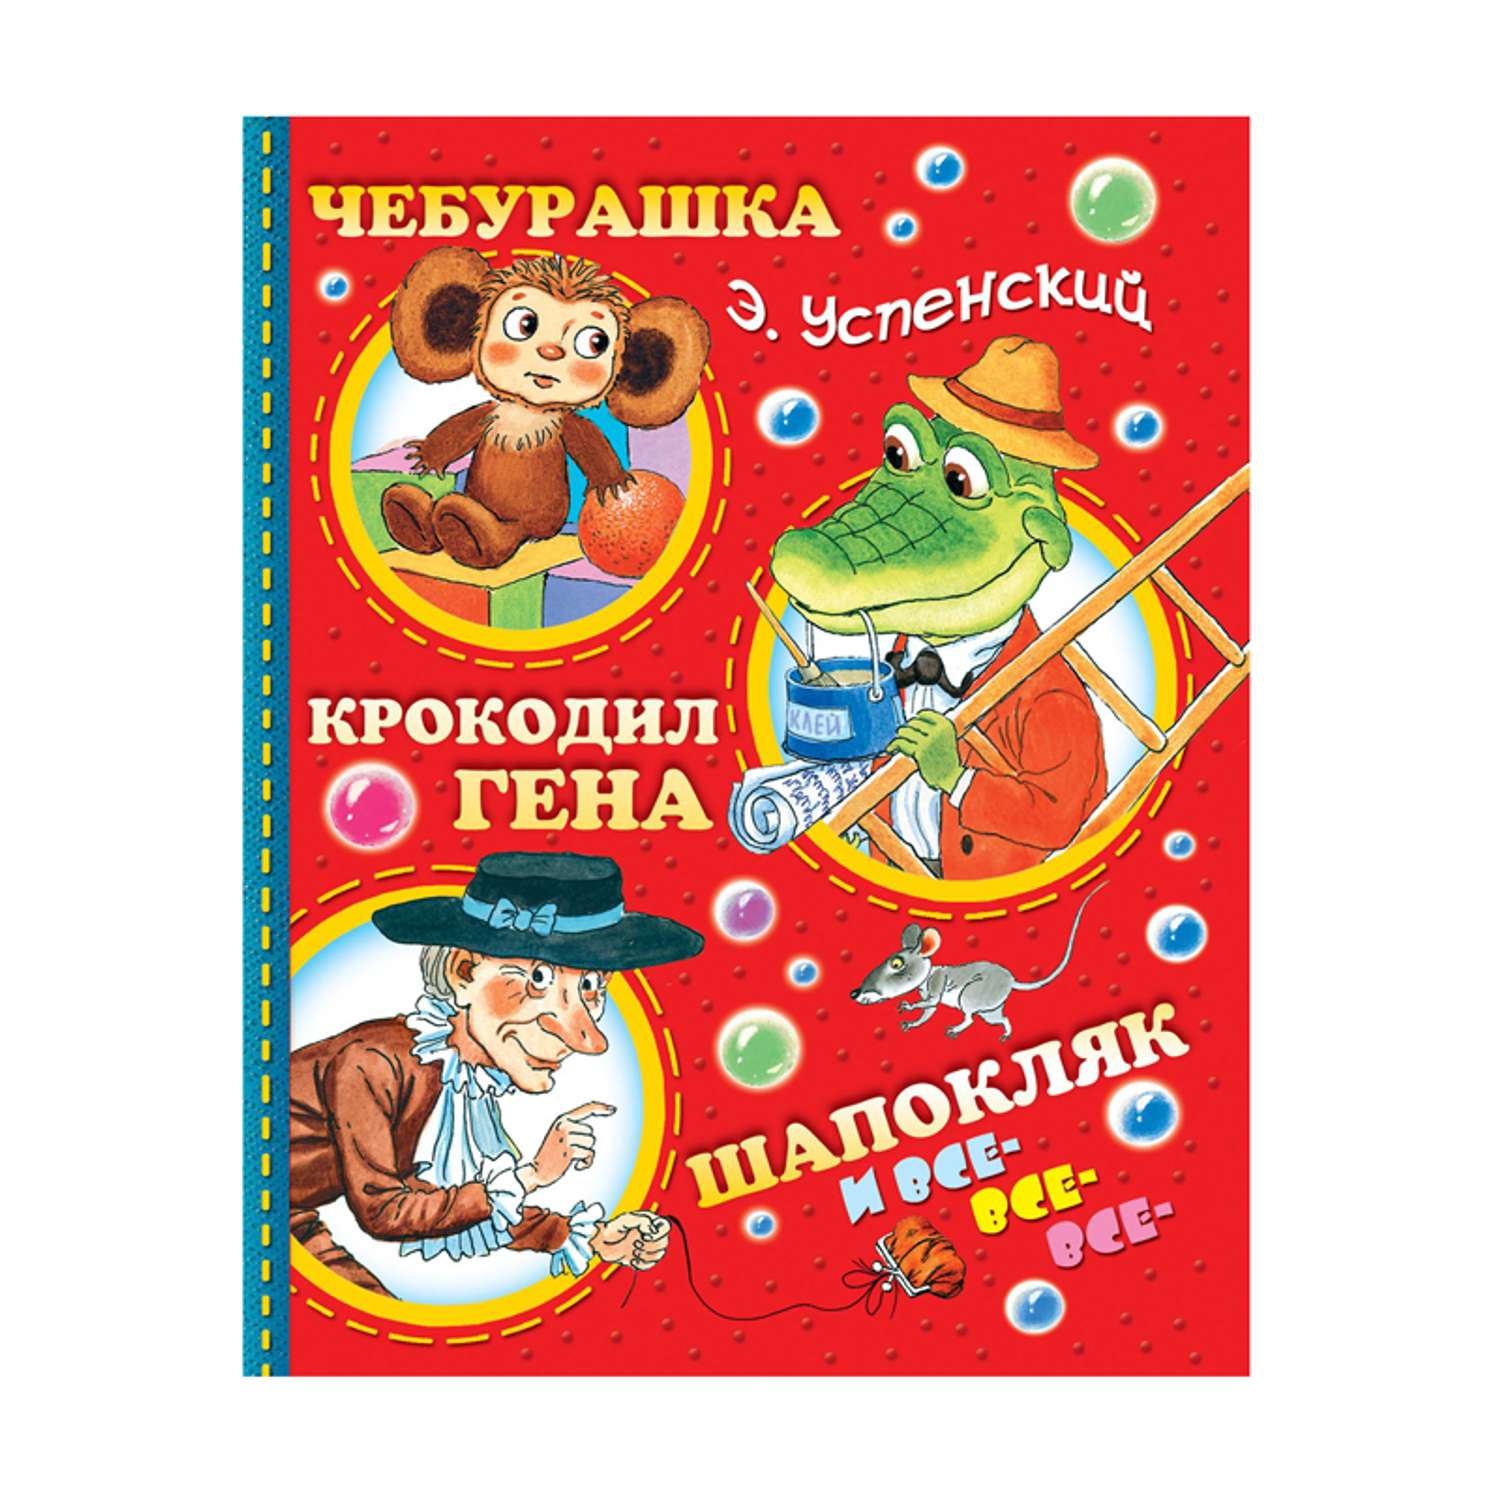 Книга АСТ Чебурашка, крокодил Гена, Шапоклчк и все-все - фото 1